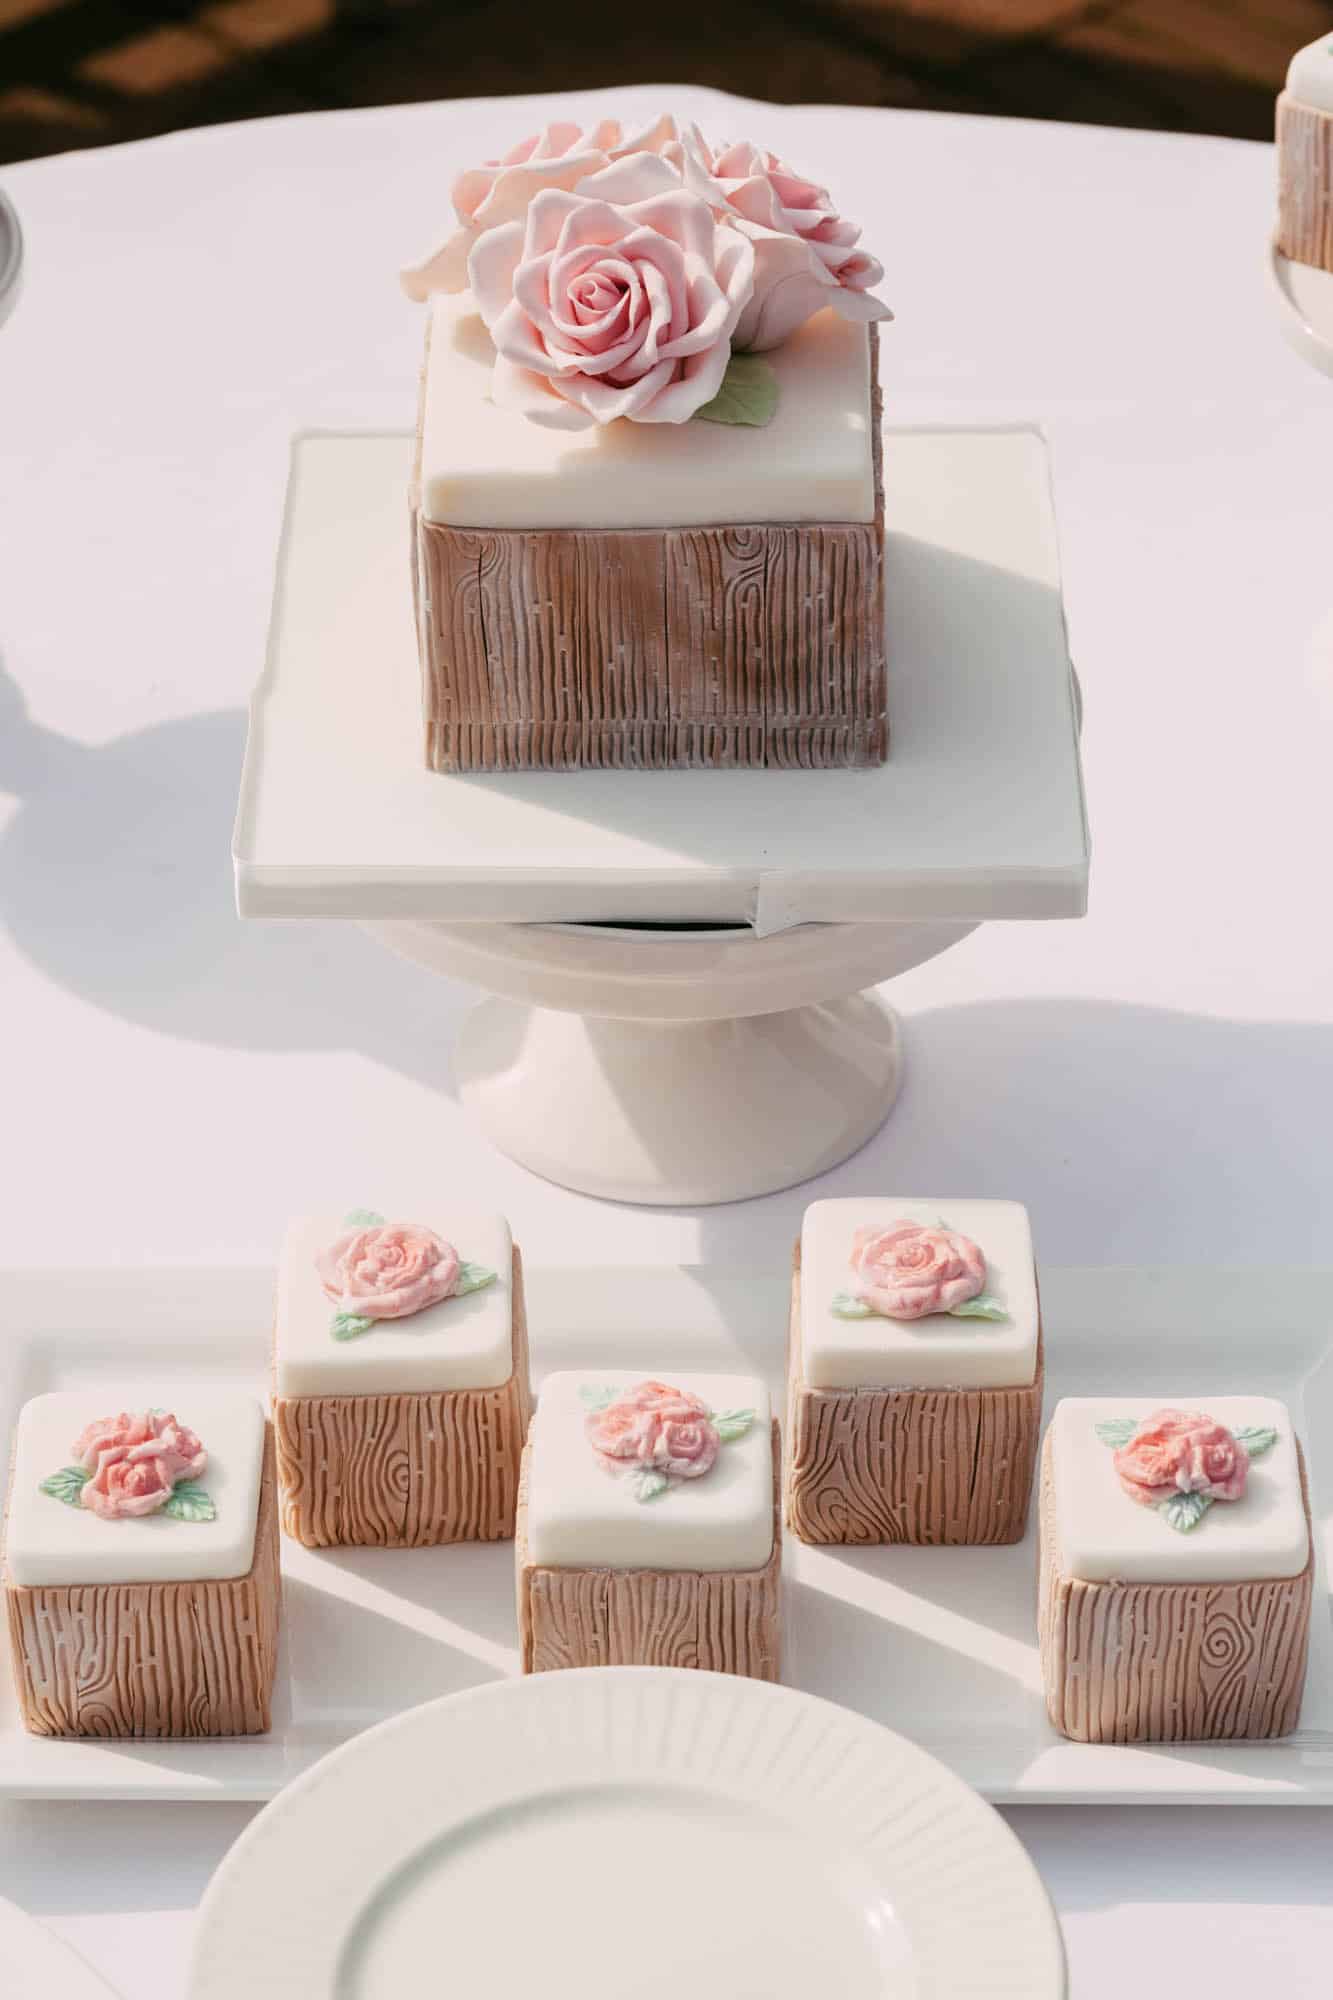 Een witte taart met roze rozen op een wit bord, perfect voor bruidstaarten.